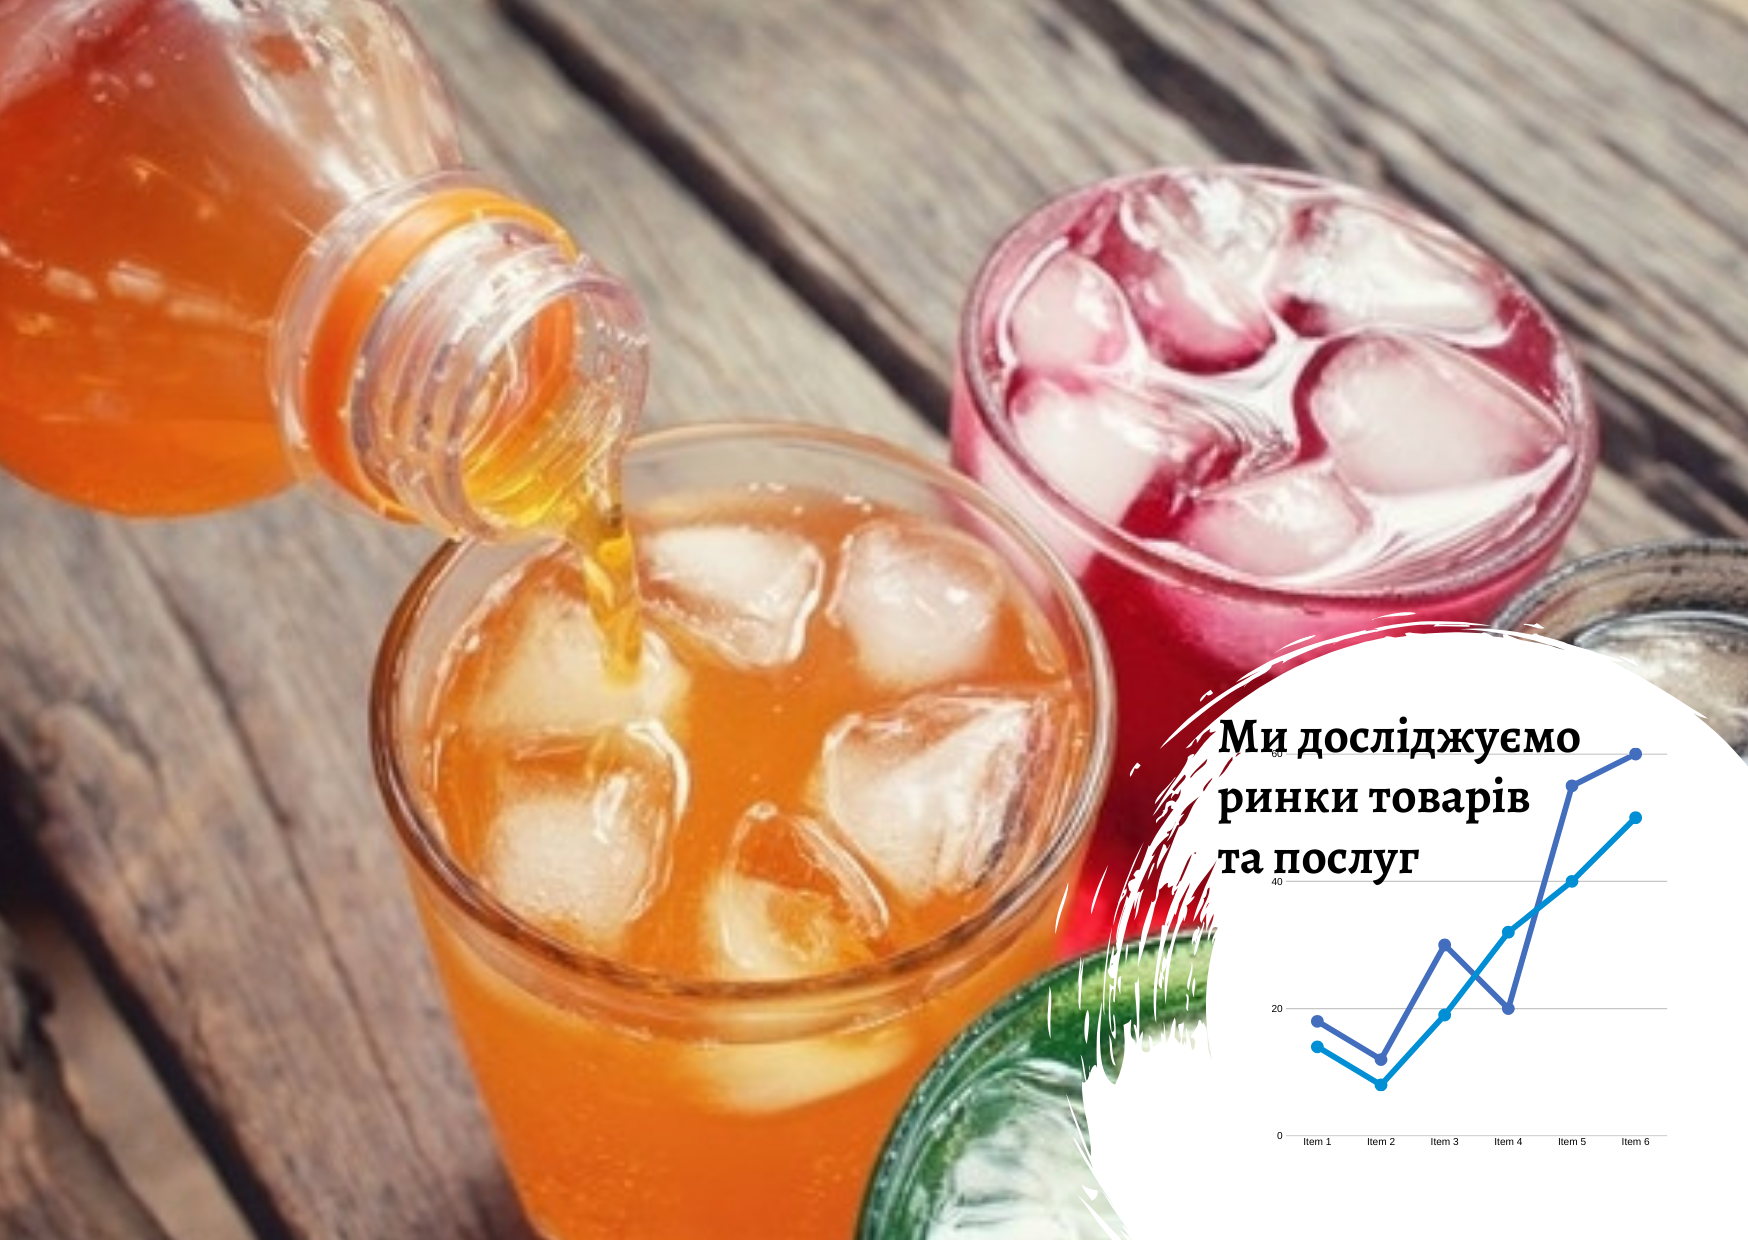 Ukrainian beverage market 